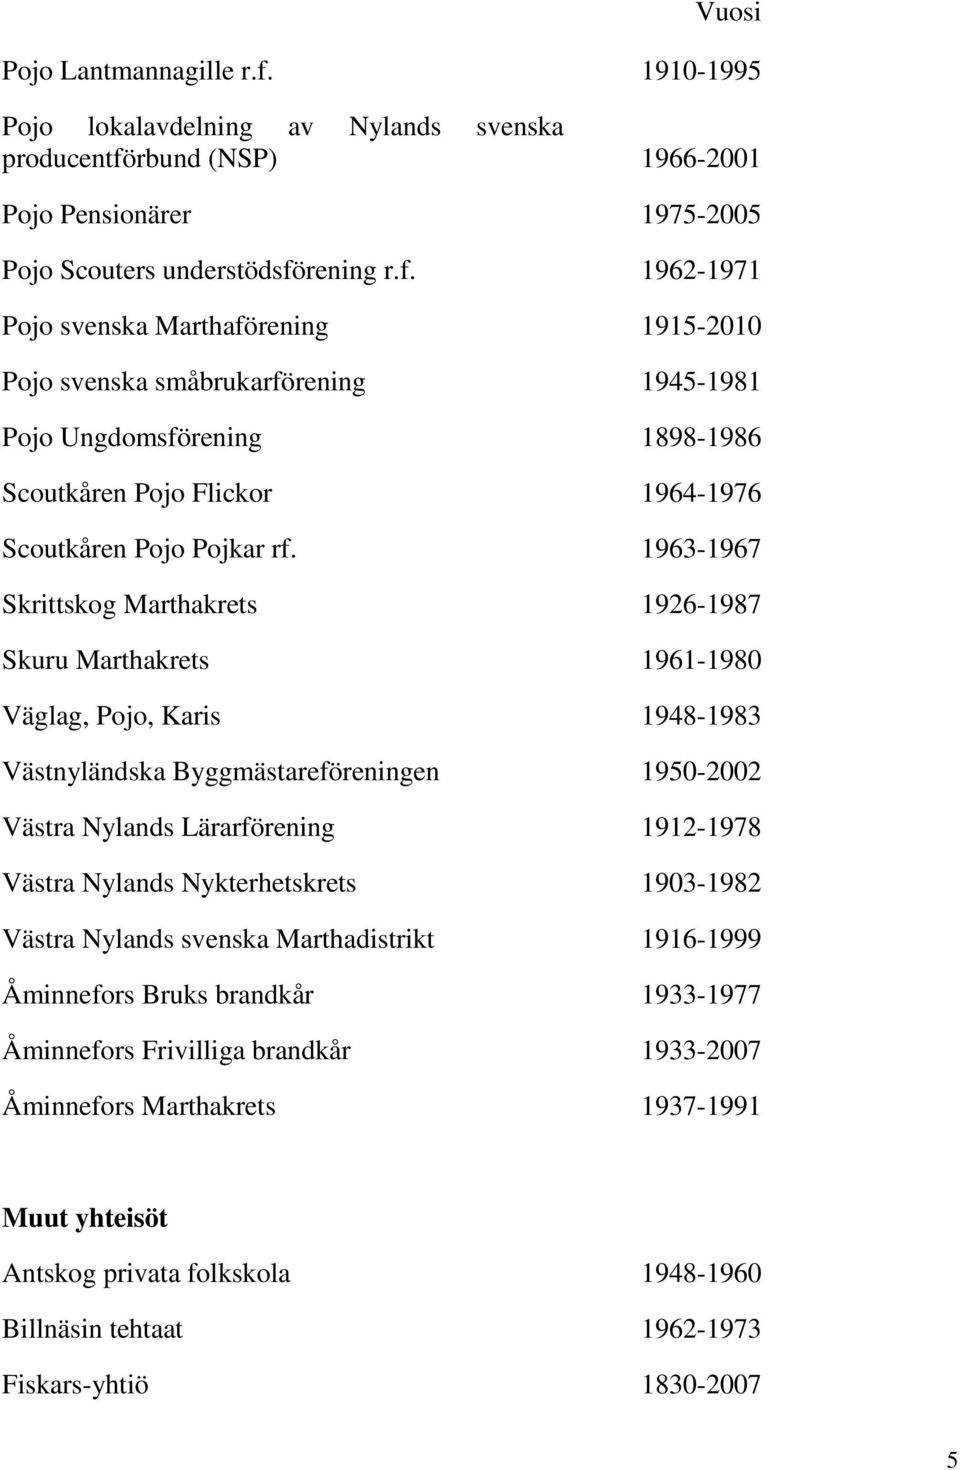 rbund (NSP) 1966-2001 Pojo Pensionärer 1975-2005 Pojo Scouters understödsfö